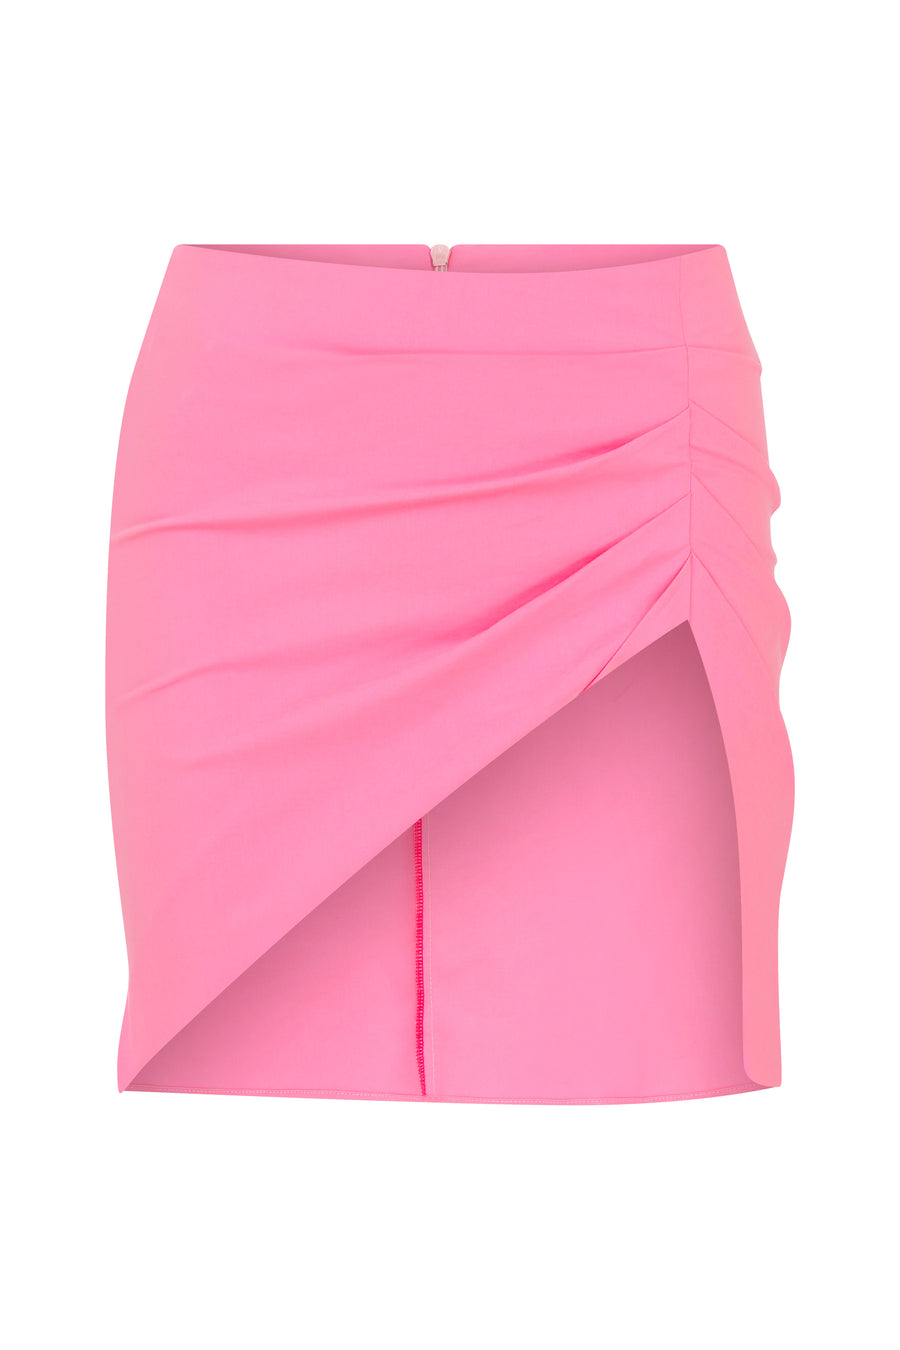 Pink Gathering Skirt